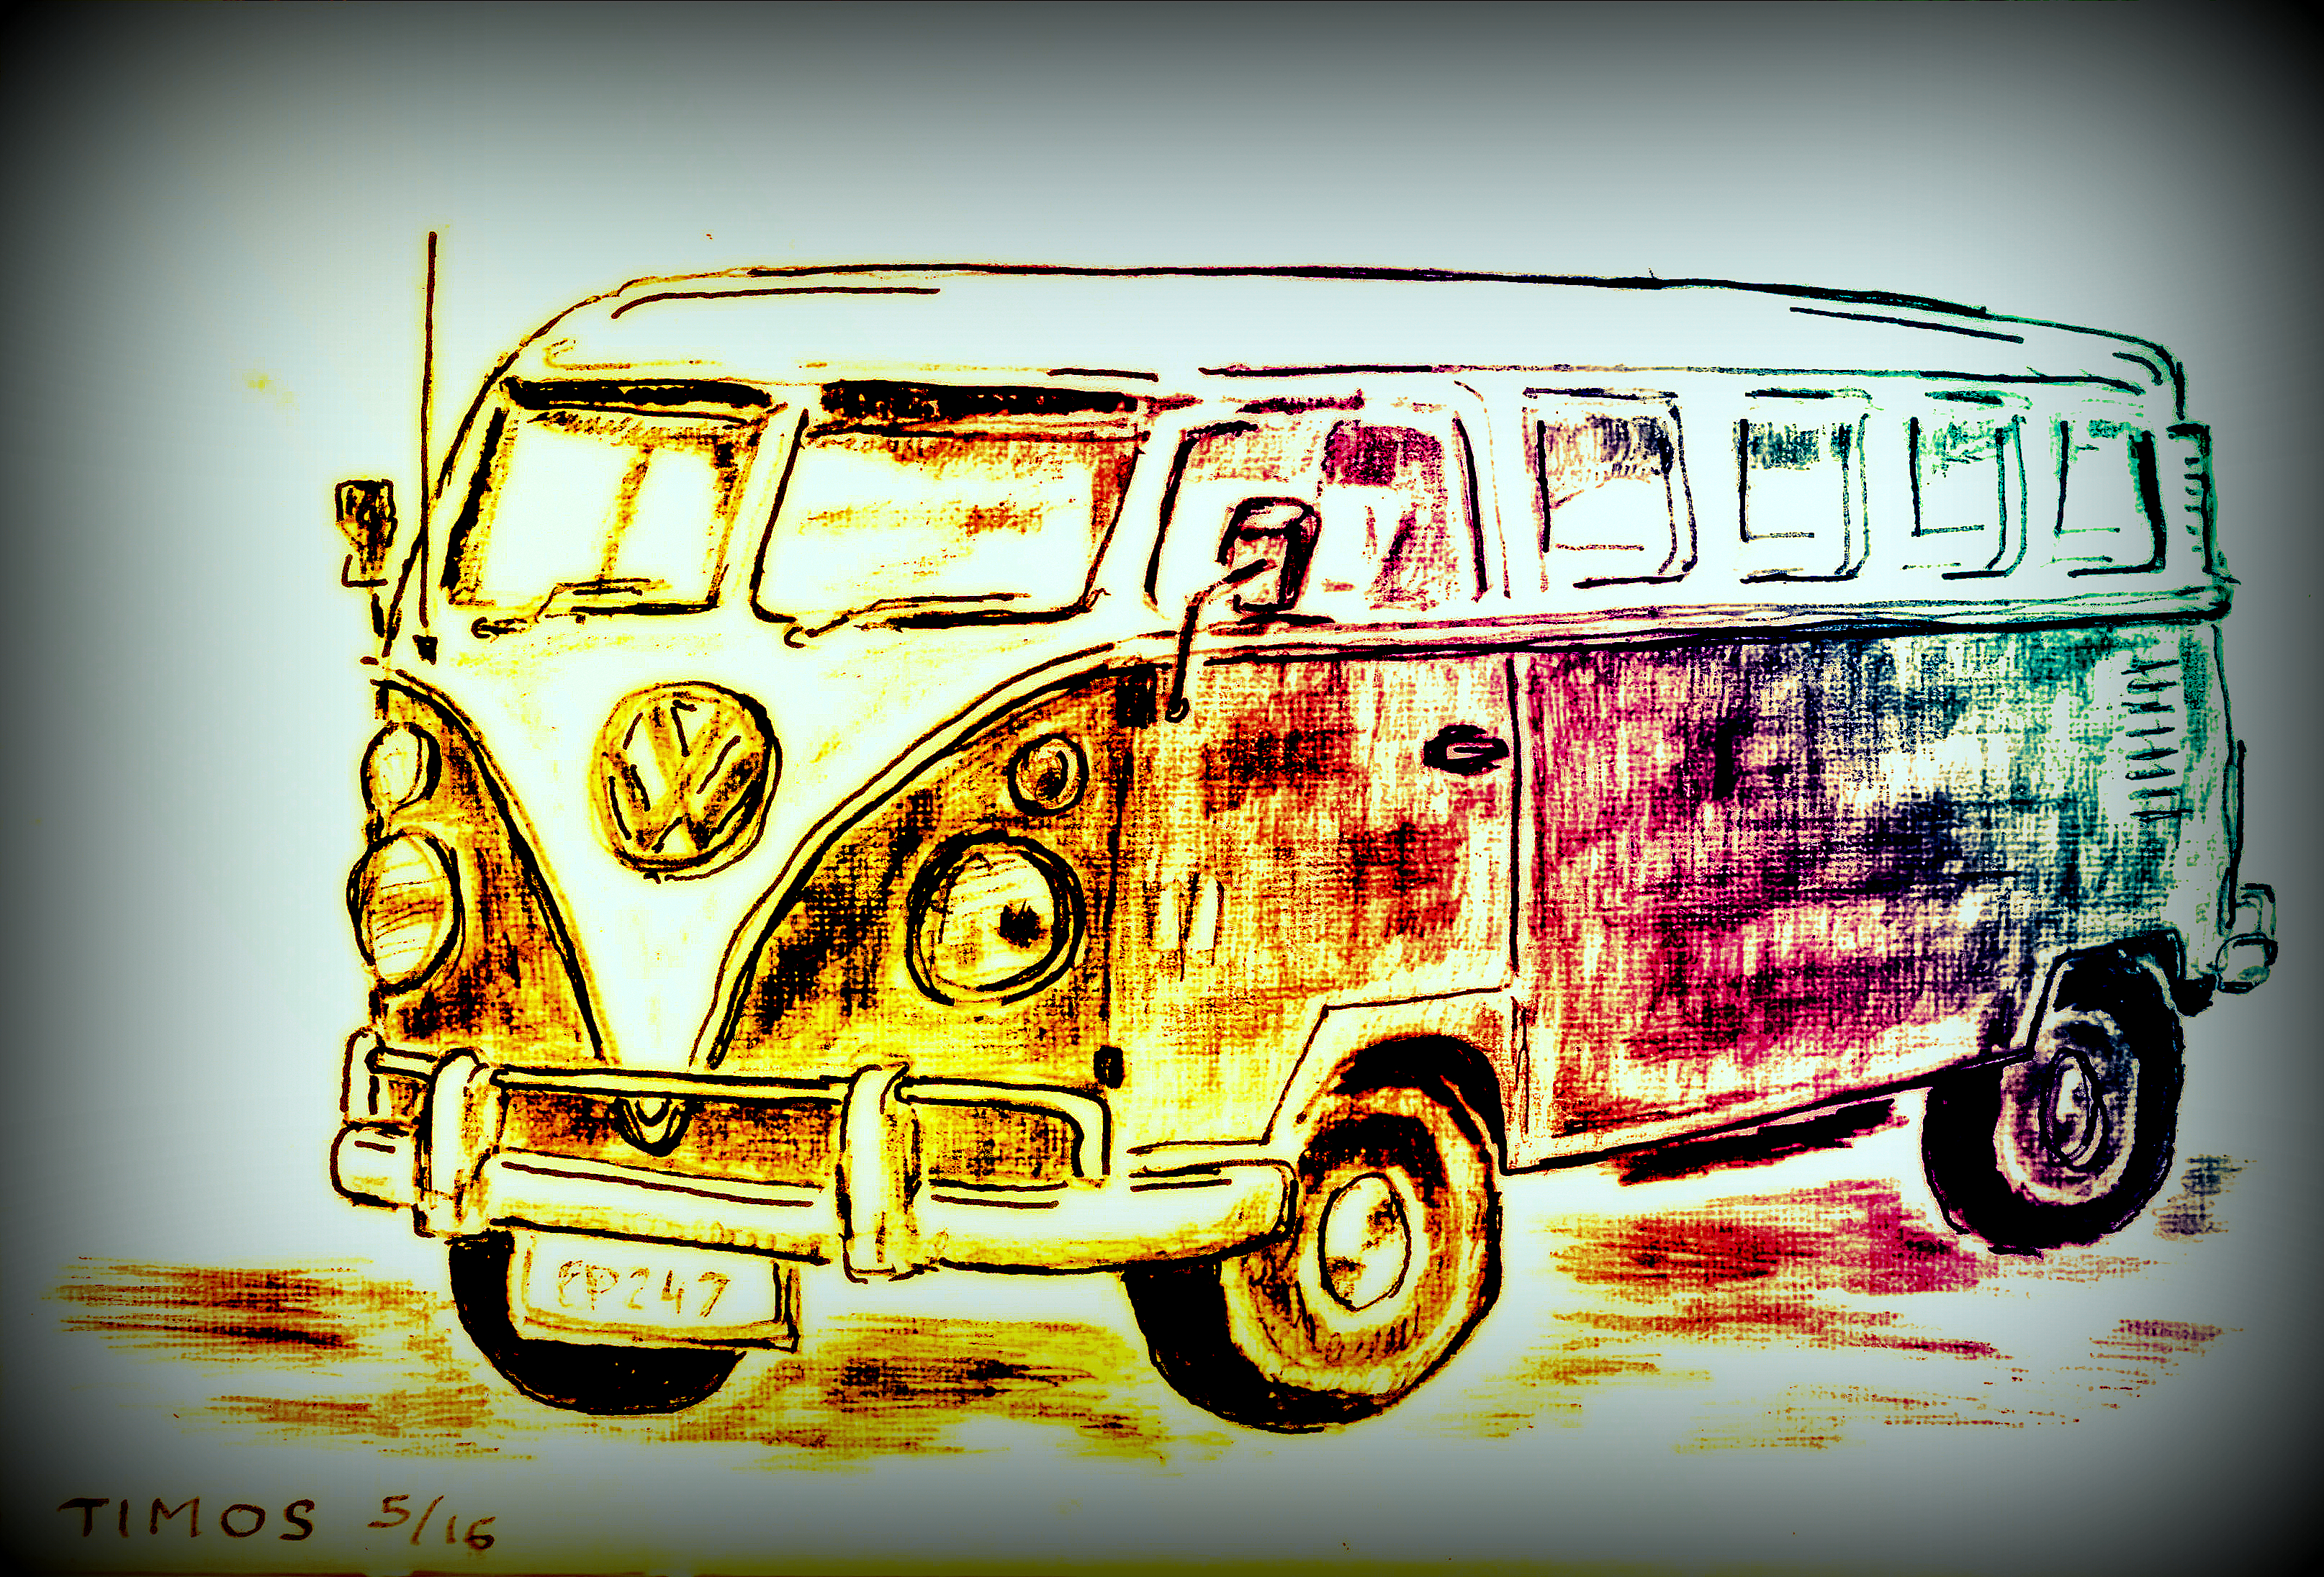 old VW van